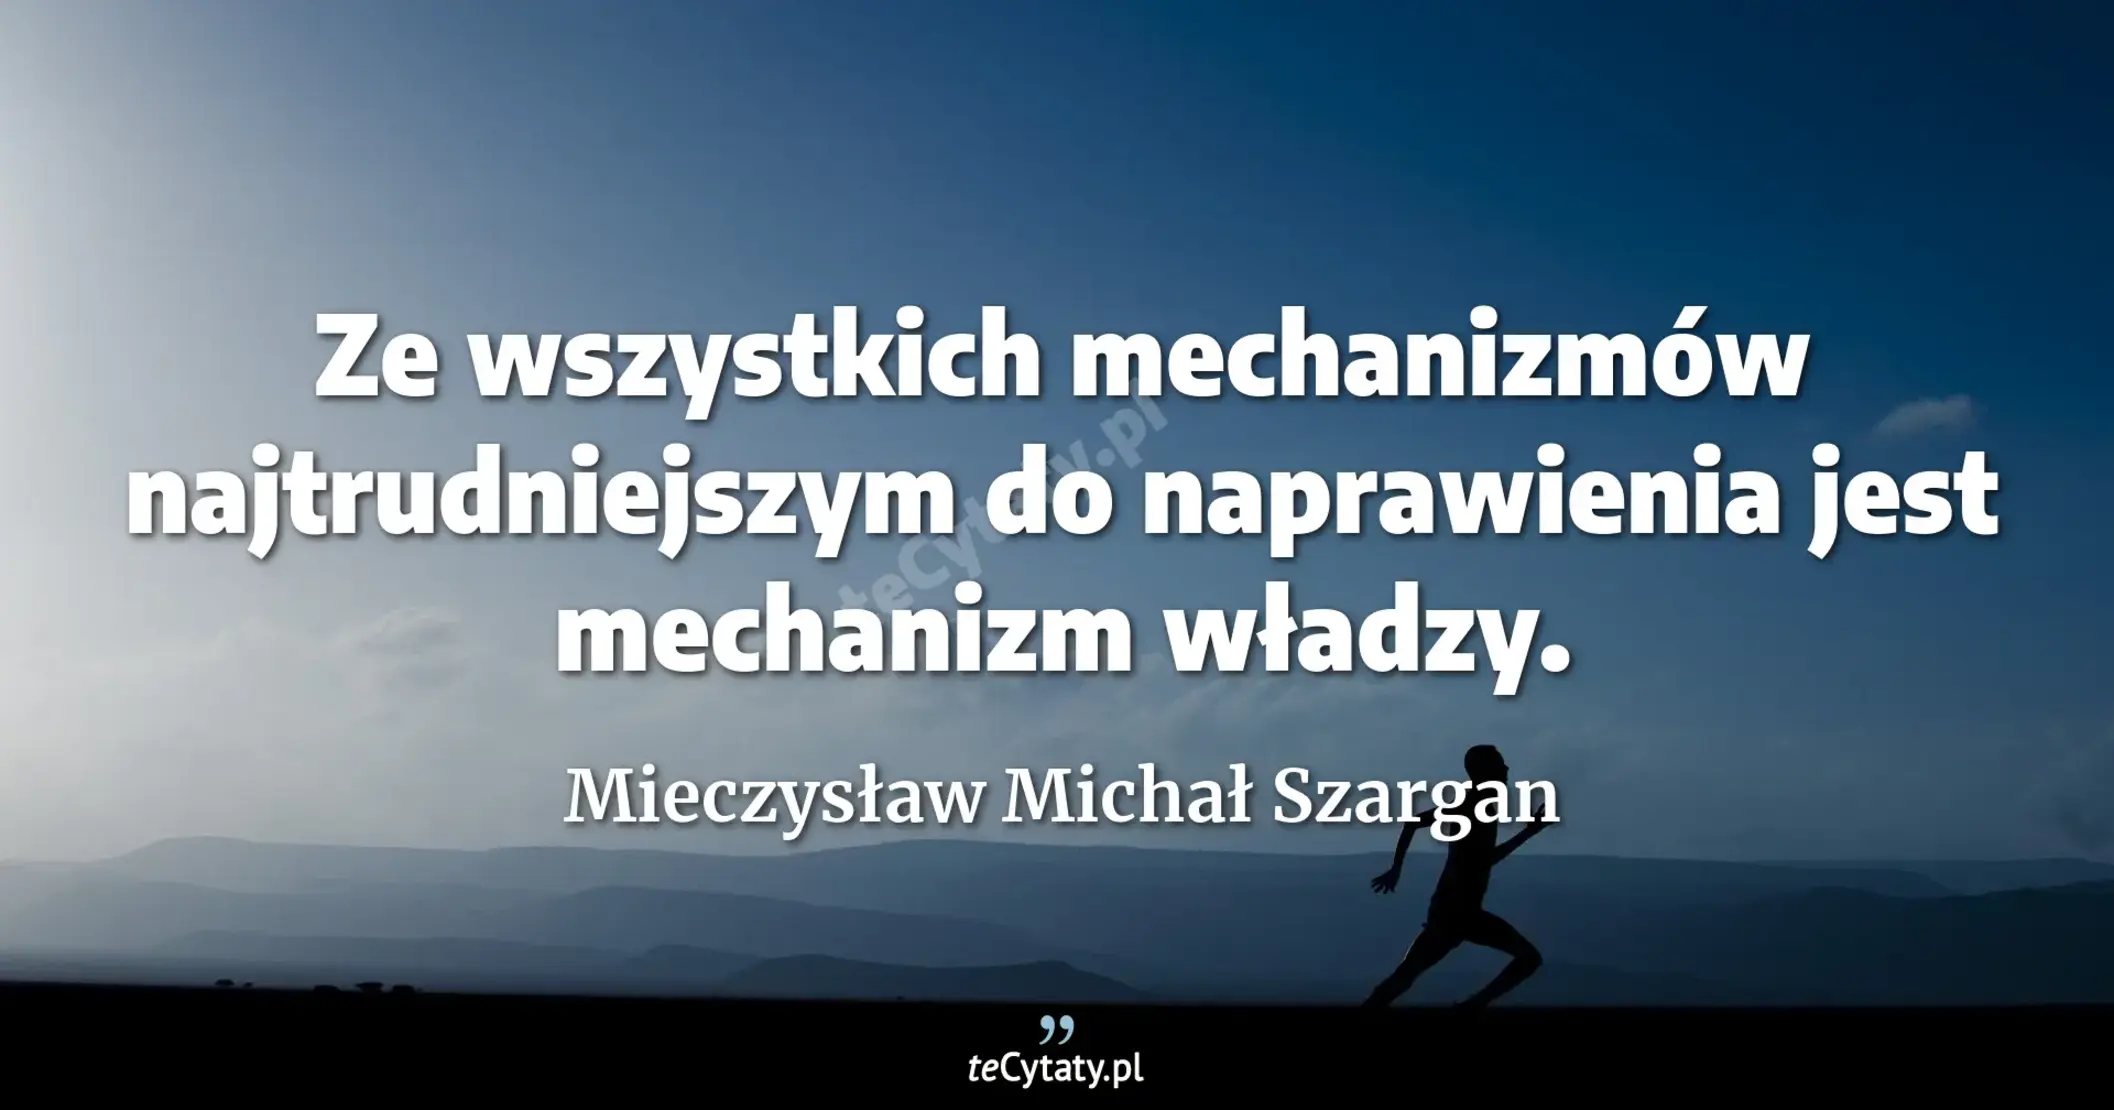 Ze wszystkich mechanizmów najtrudniejszym do naprawienia jest mechanizm władzy. - Mieczysław Michał Szargan